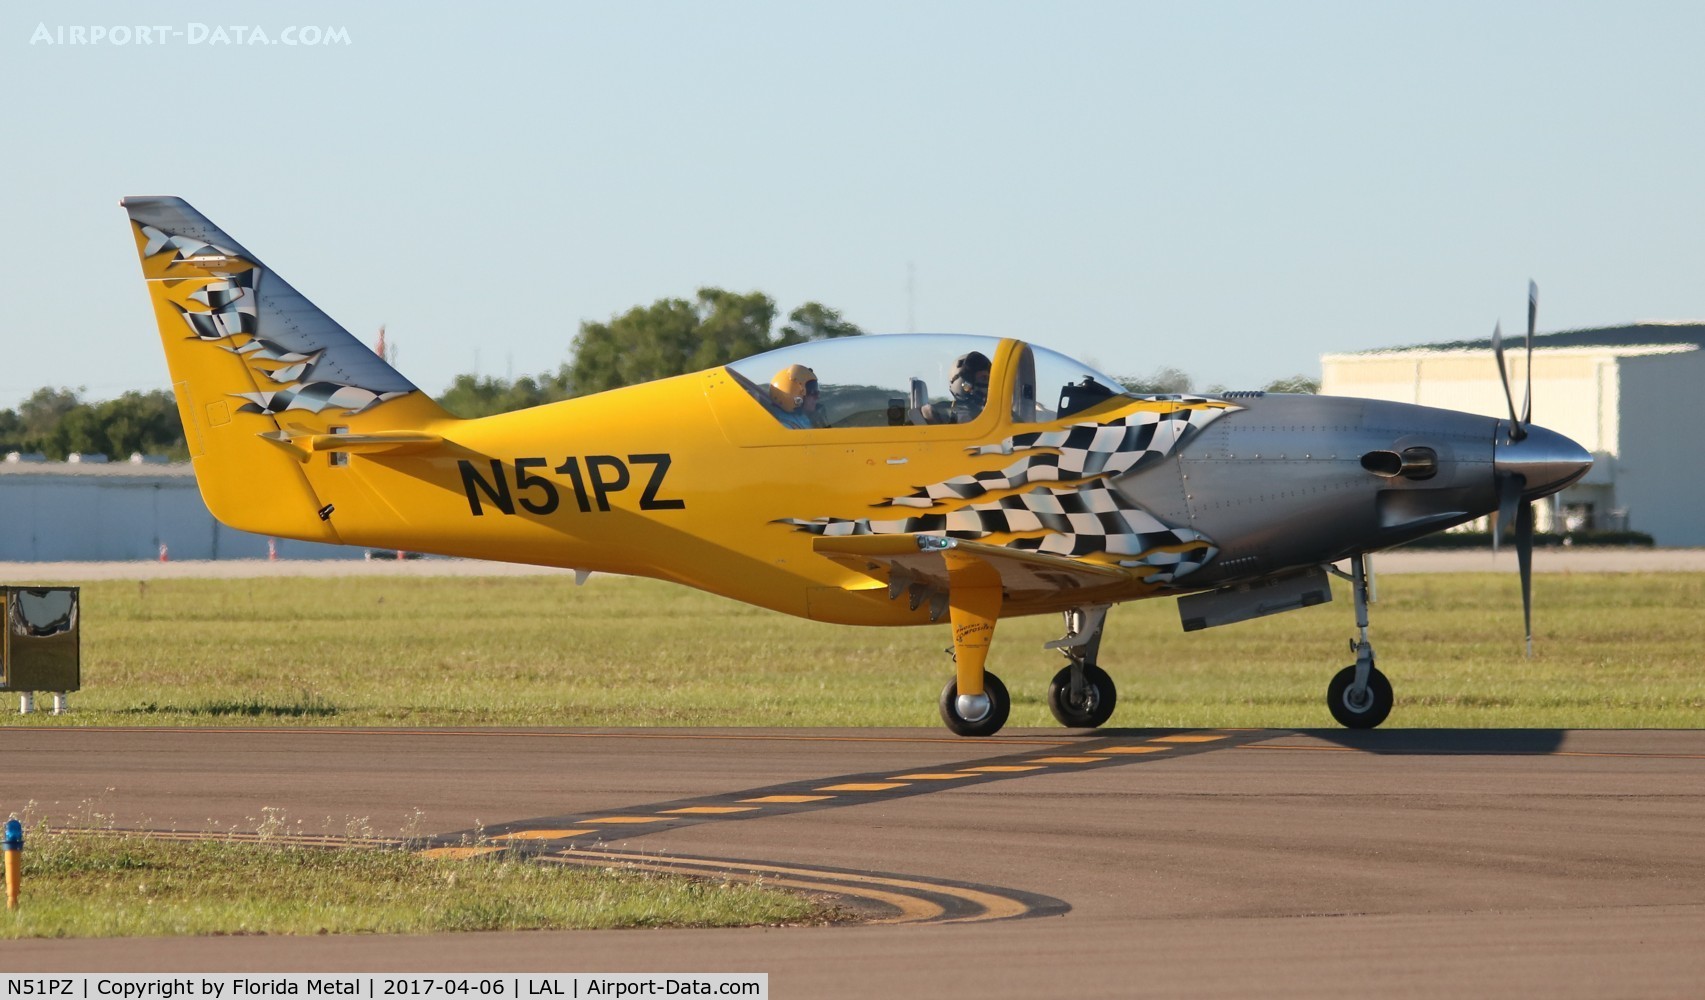 N51PZ, 2002 P Z Corp Legend C/N 131T, Performance Aircraft Legend